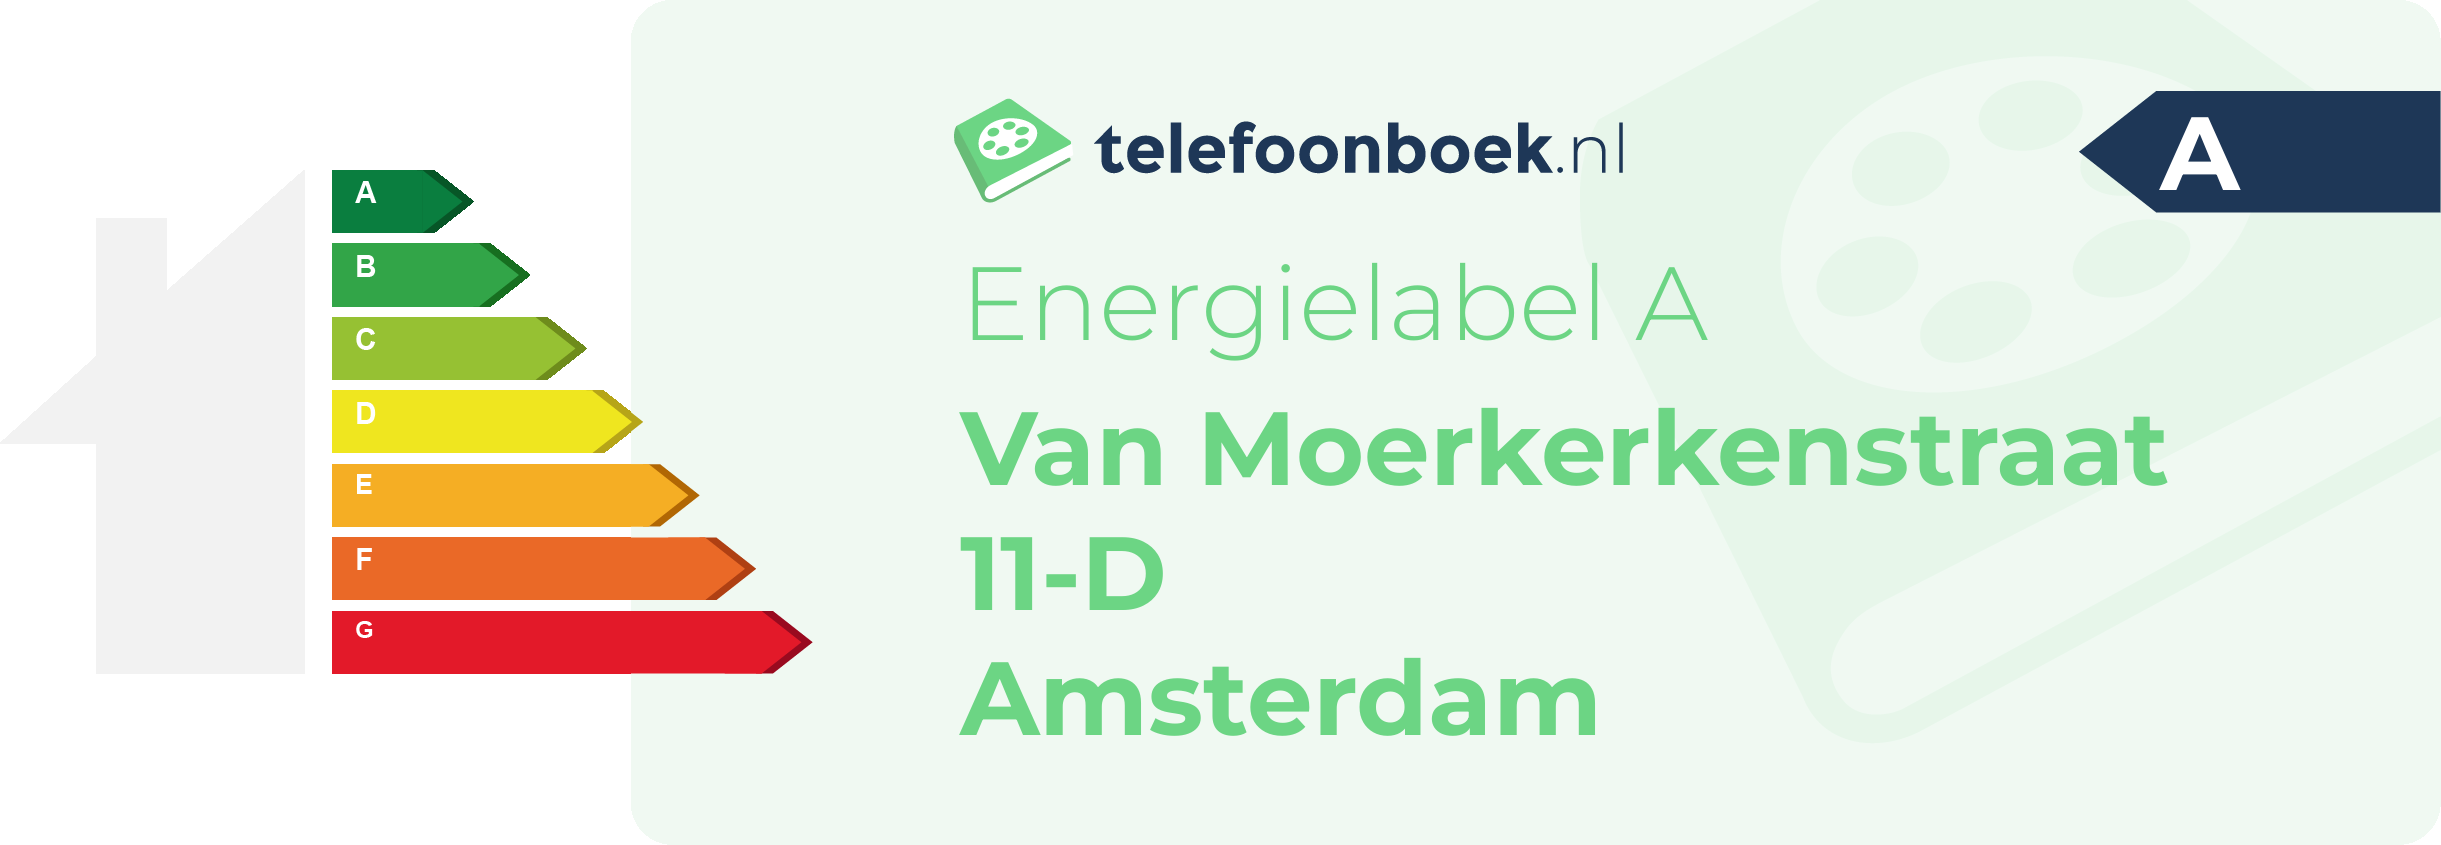 Energielabel Van Moerkerkenstraat 11-D Amsterdam